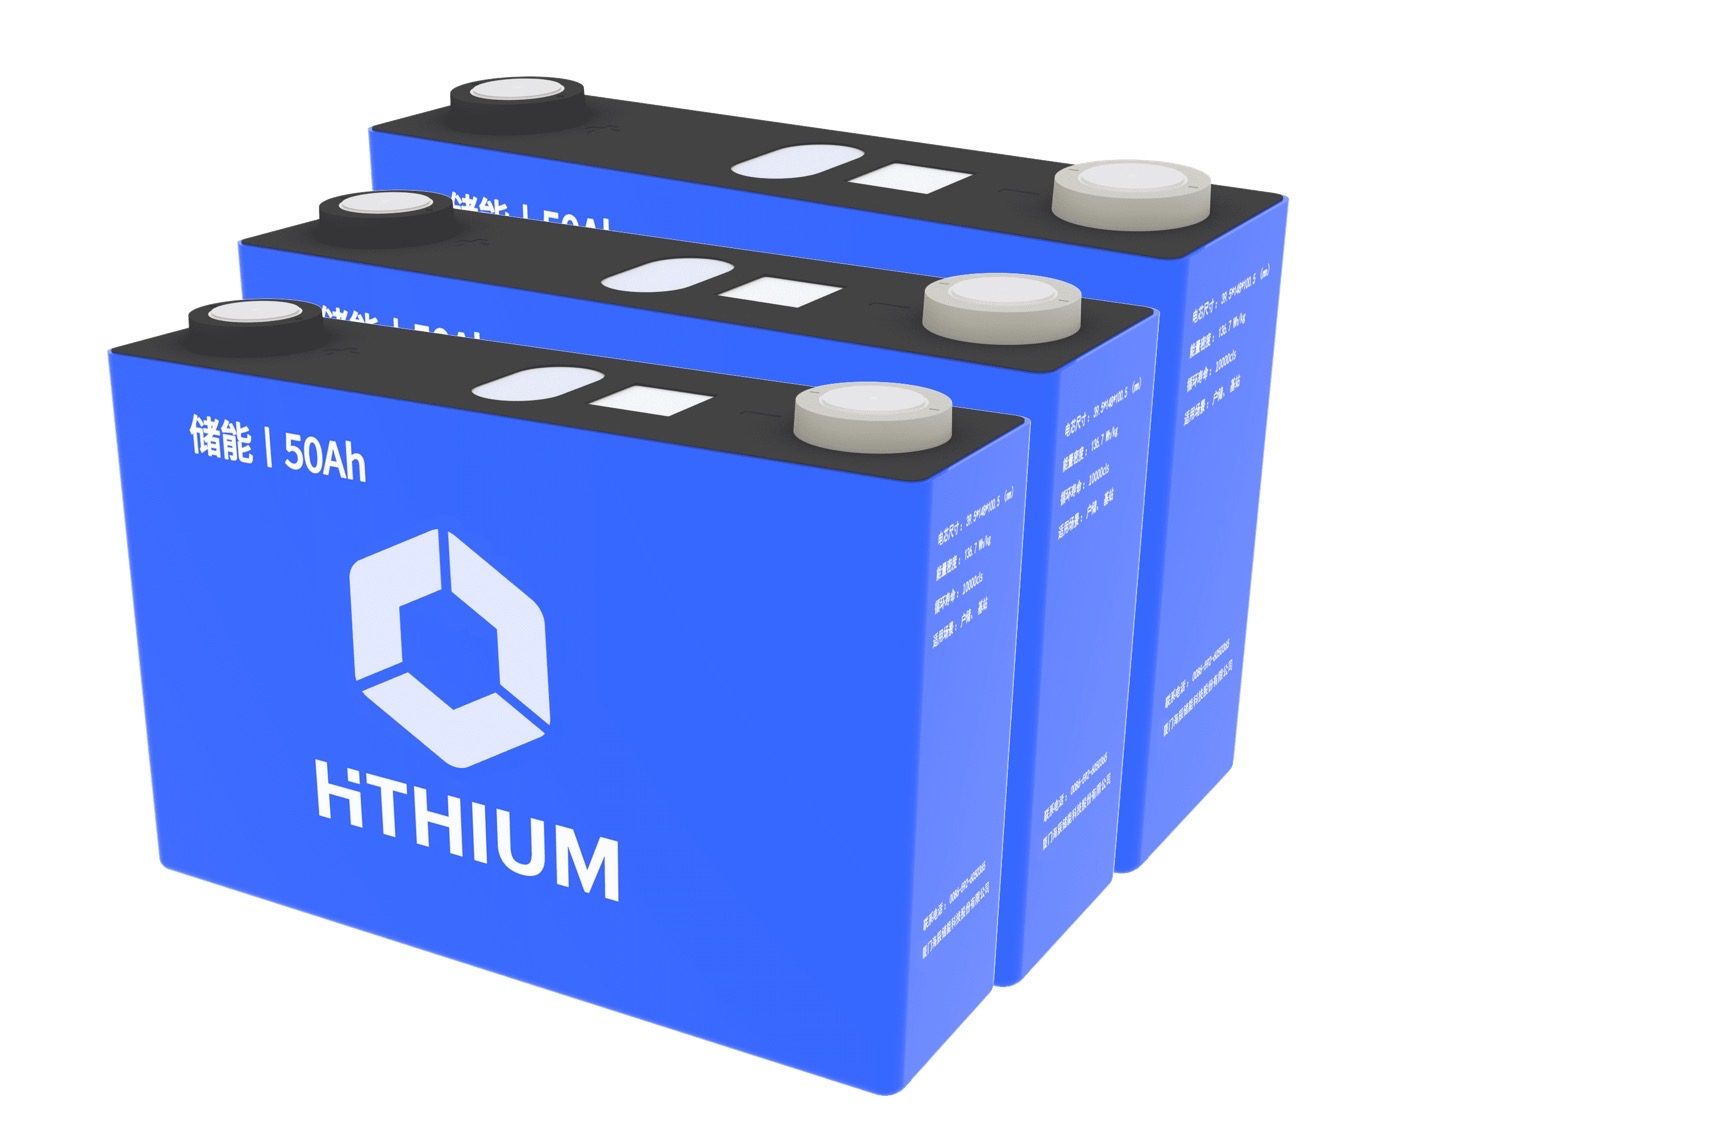 Chinese energy storage startup Hithium raises $278m in Series B round